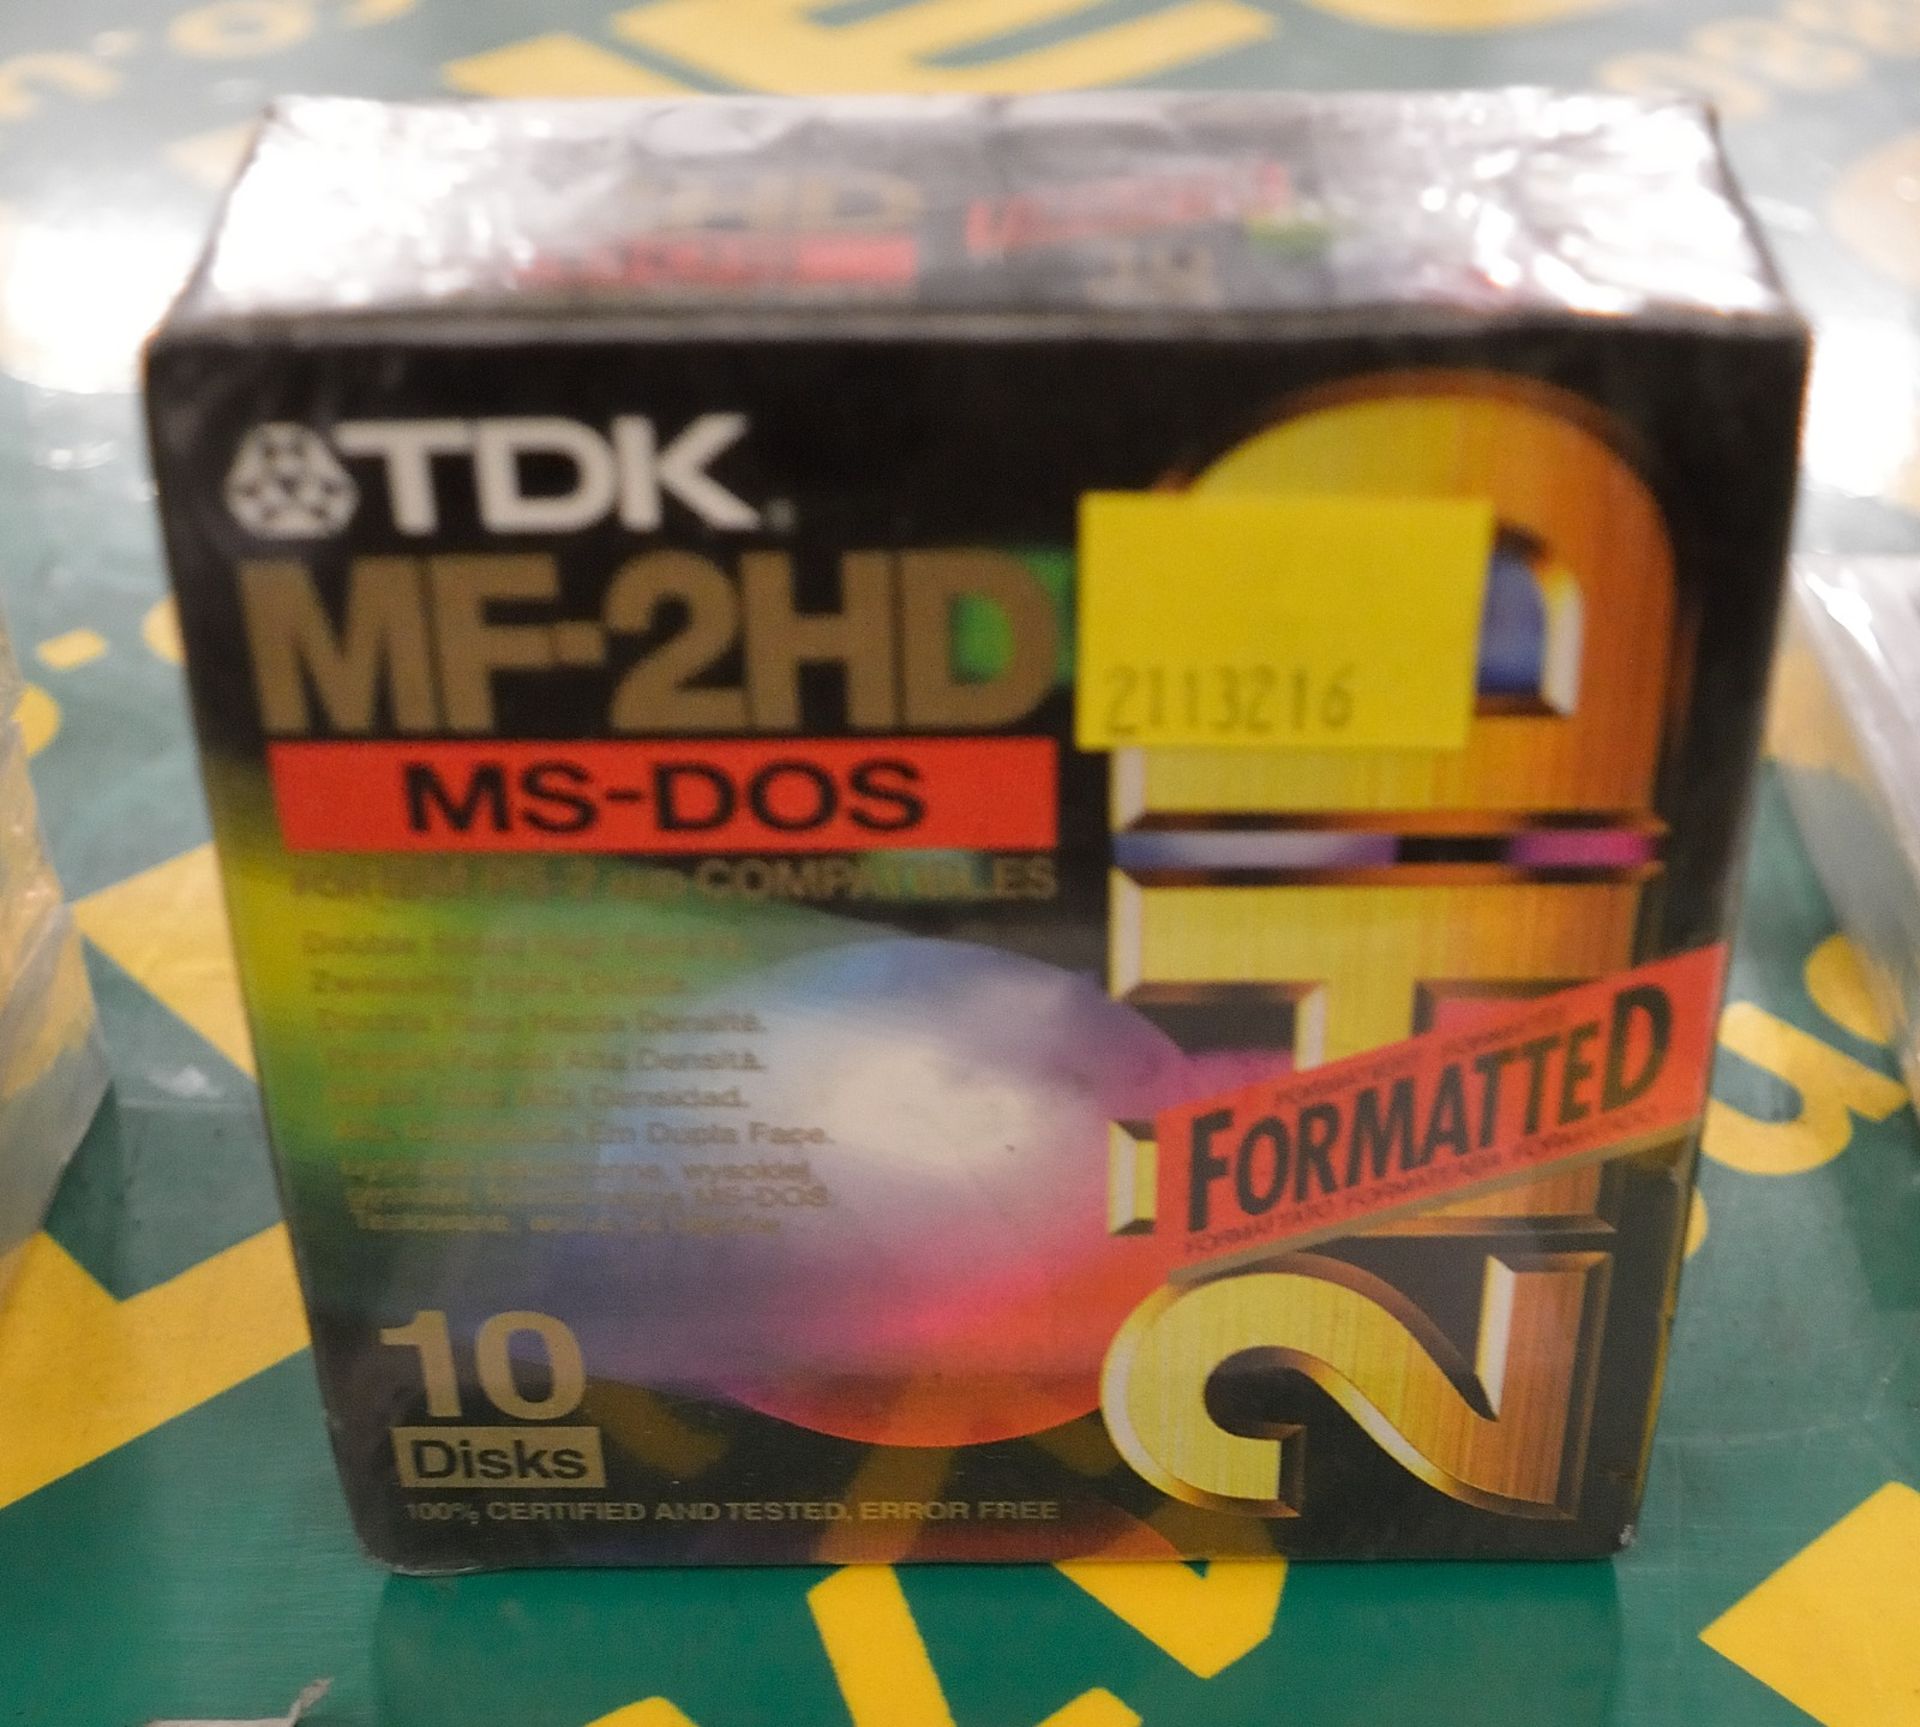 1x Box TDK MF-2HD DSHD Discs - 10 per box.